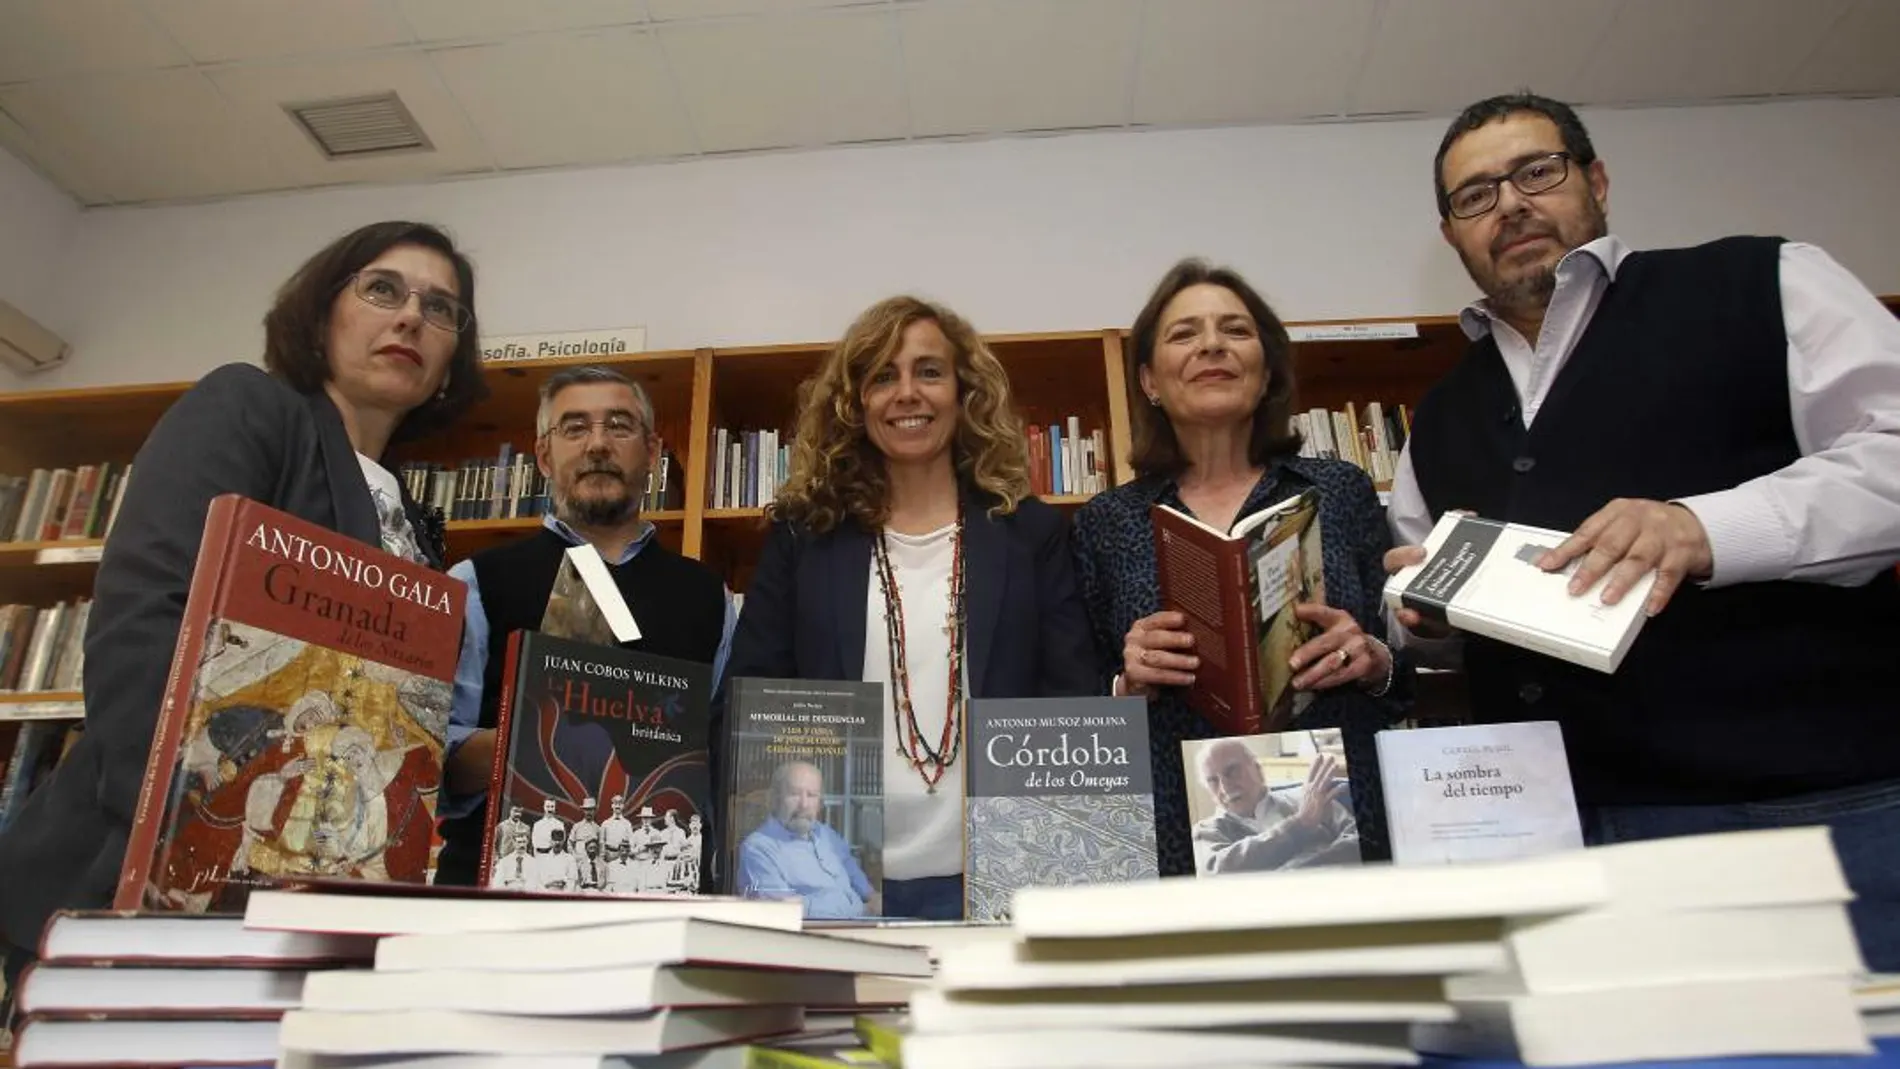 La Fundación Lara celebra el Día del Libro donando ejemplares